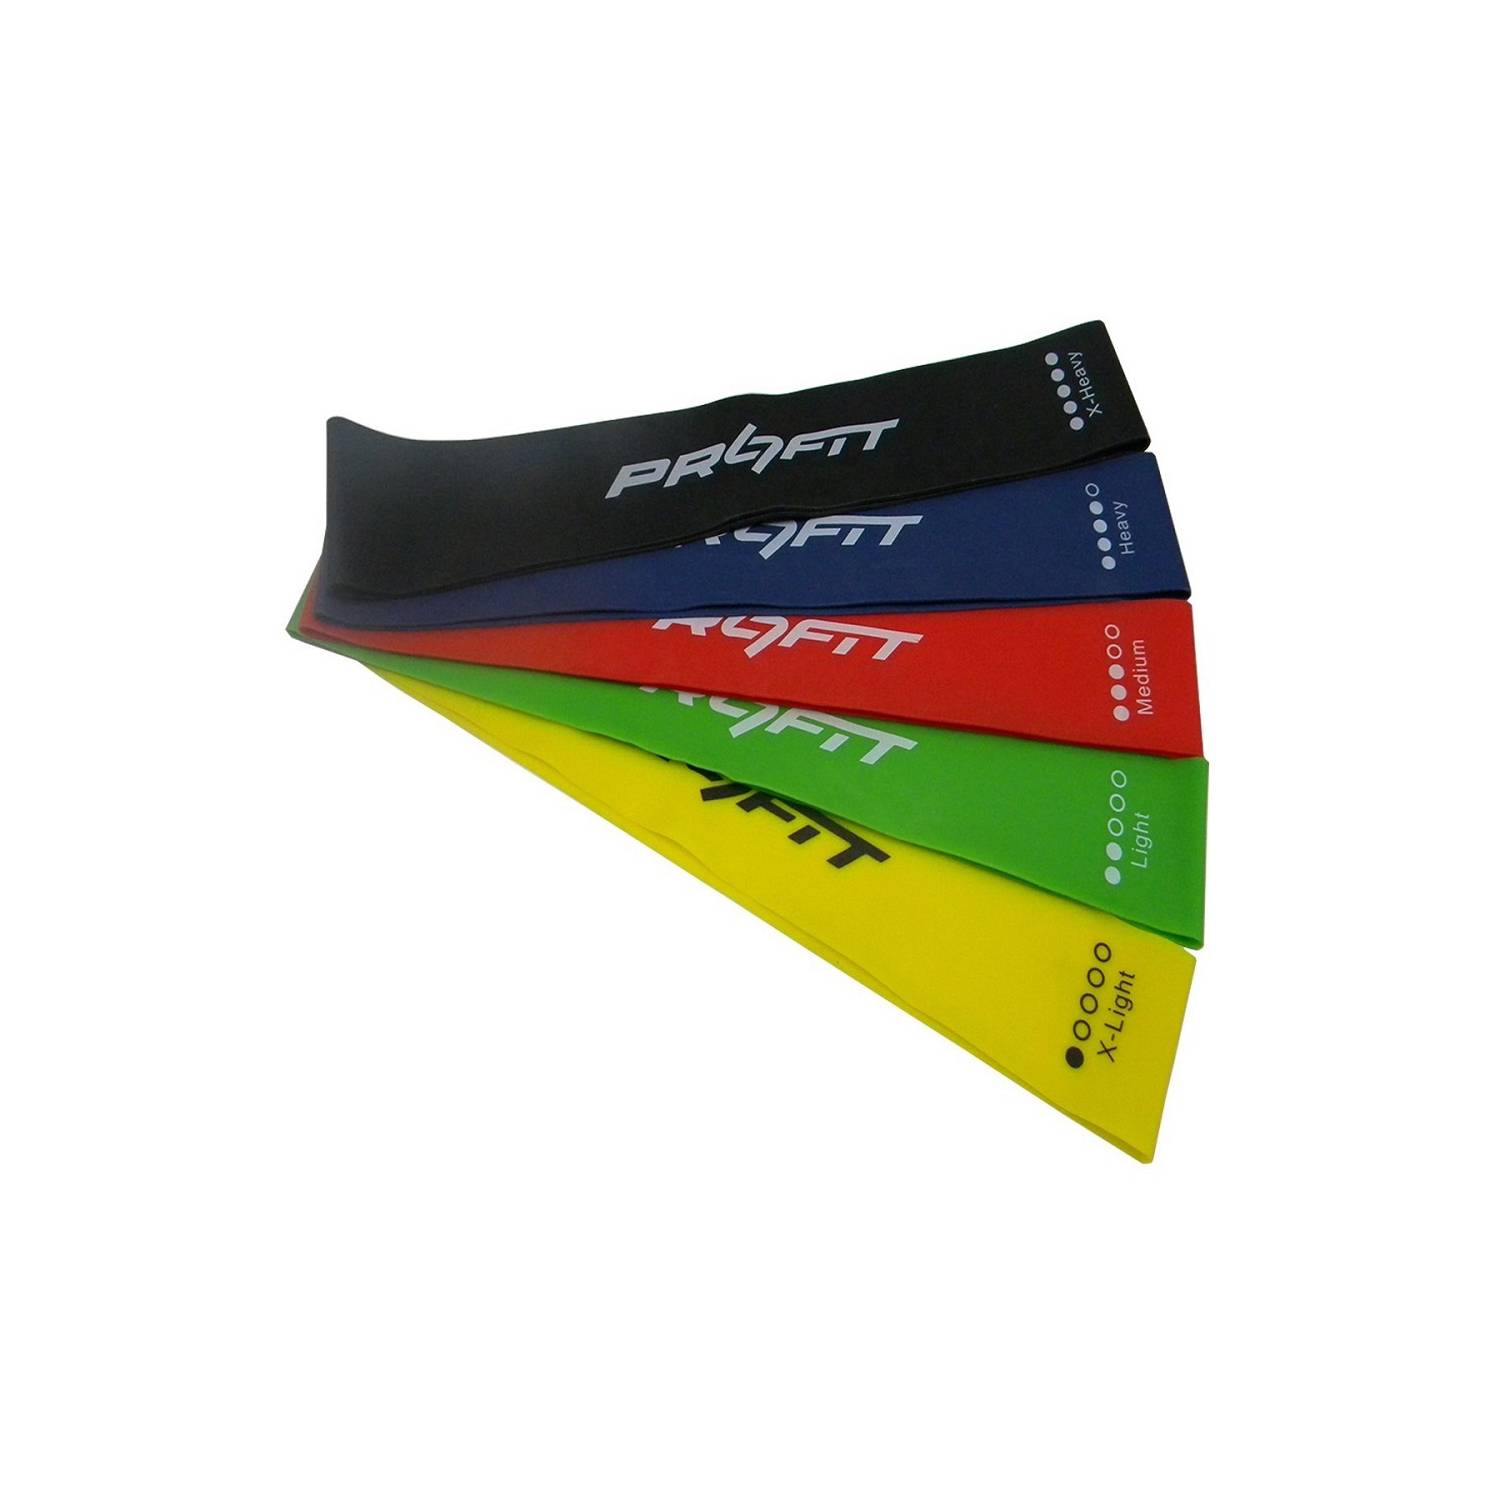 Pack de 4 bandas elásticas de látex, varios colores y niveles de